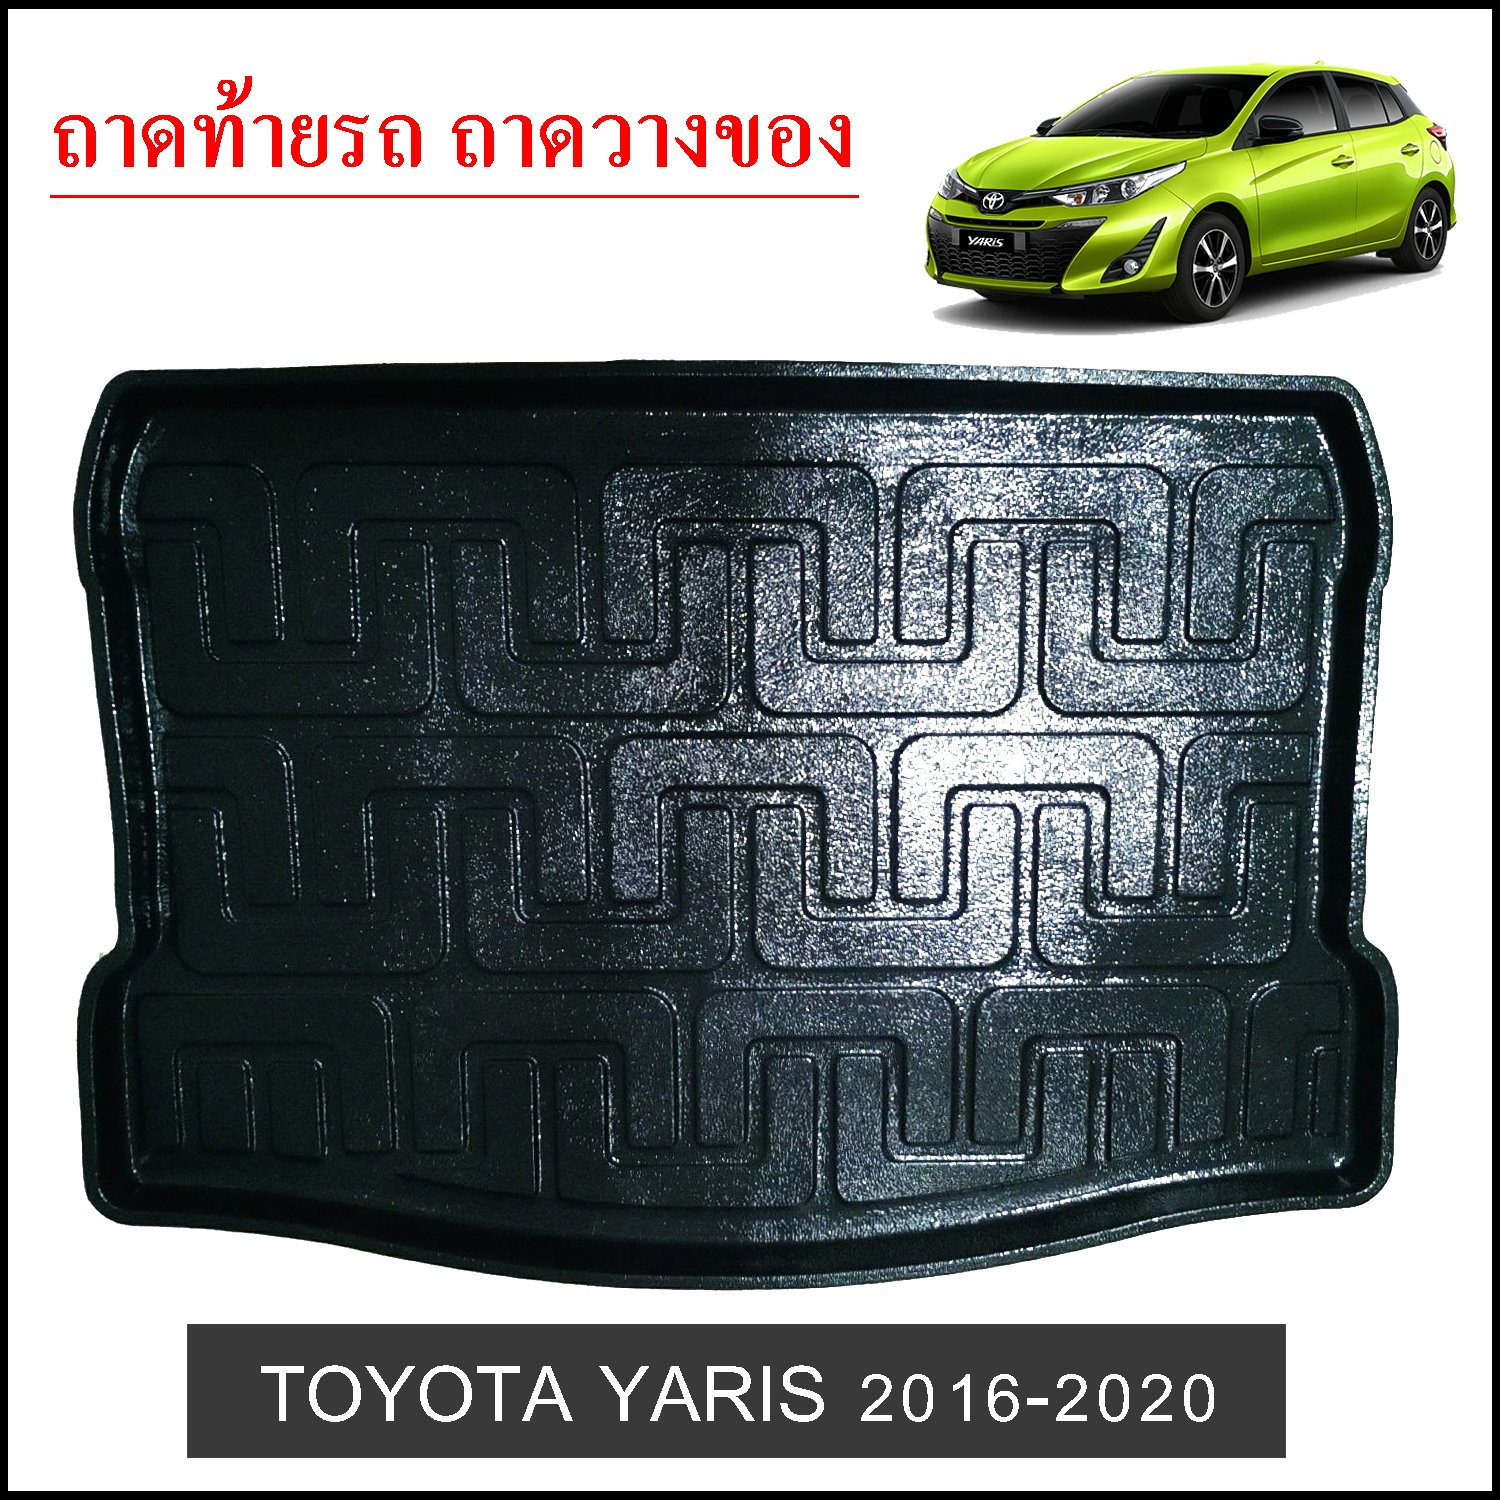 ถาดท้ายวางของ Toyota Yaris 2016-2020